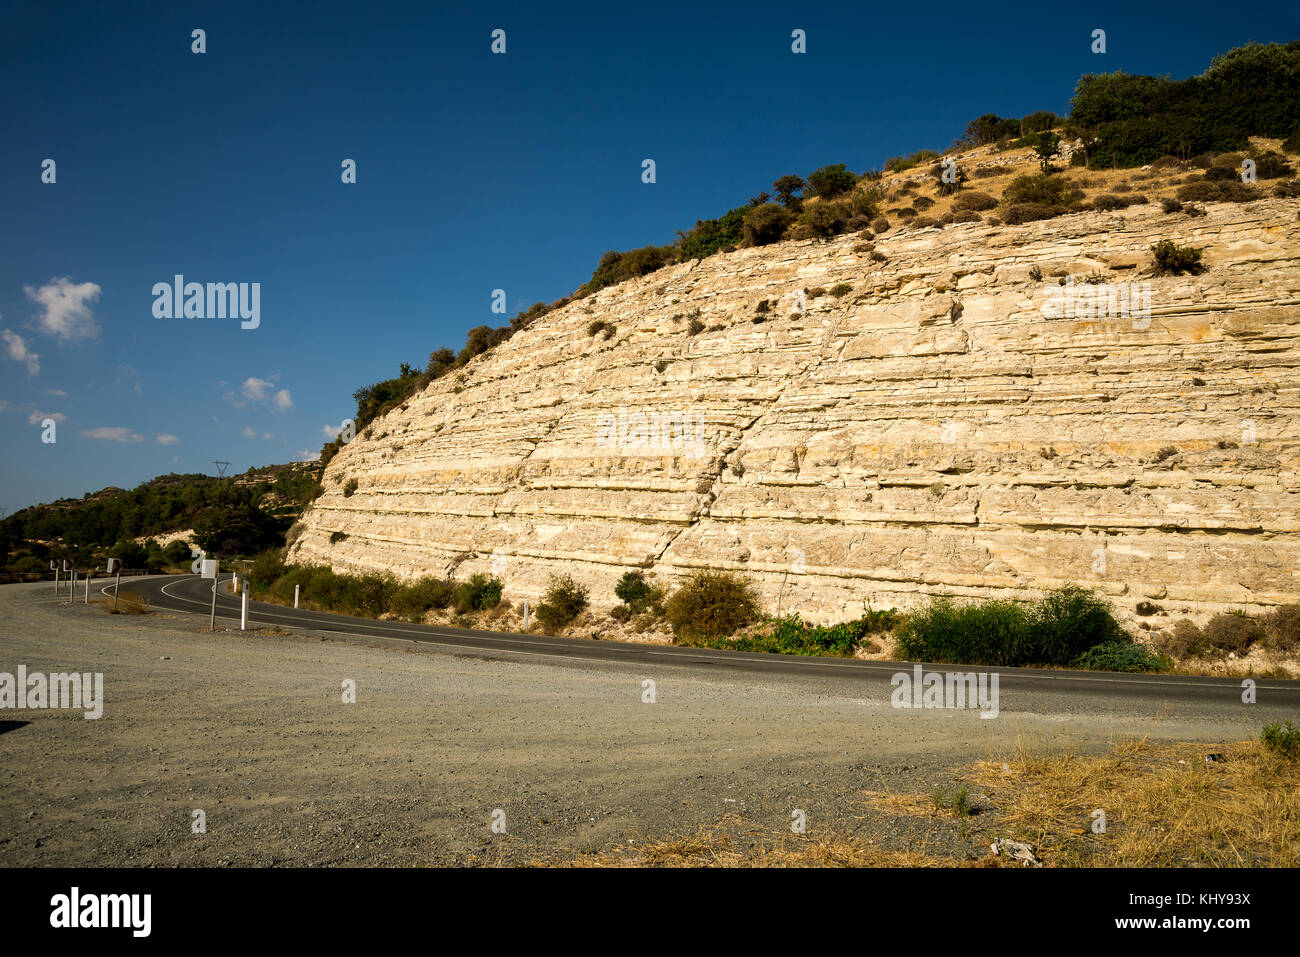 Una strada da limassol a platres mentre auto viaggiare in auto, Cipro centrale regione del vino Foto Stock